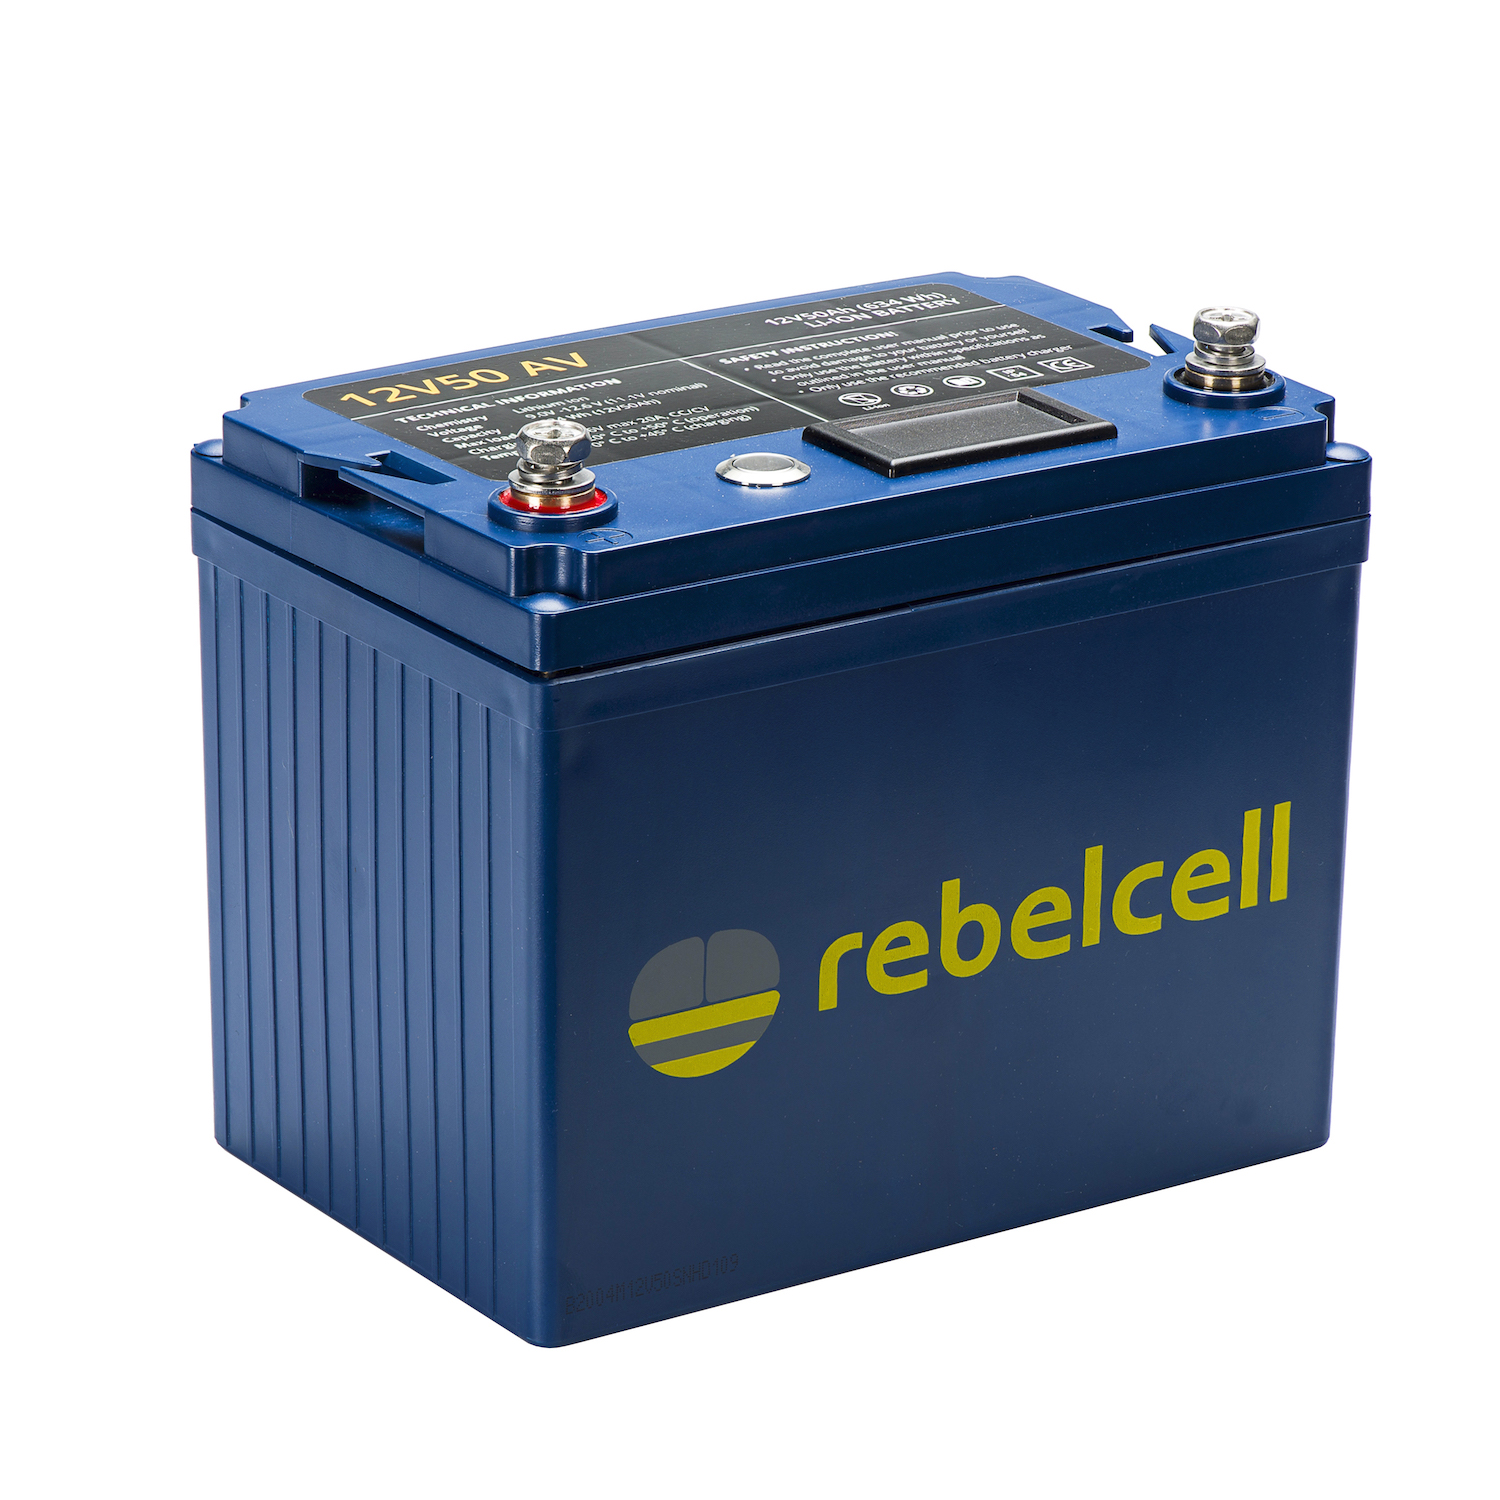 Rebelcell, Lithium battery 12V50 AV